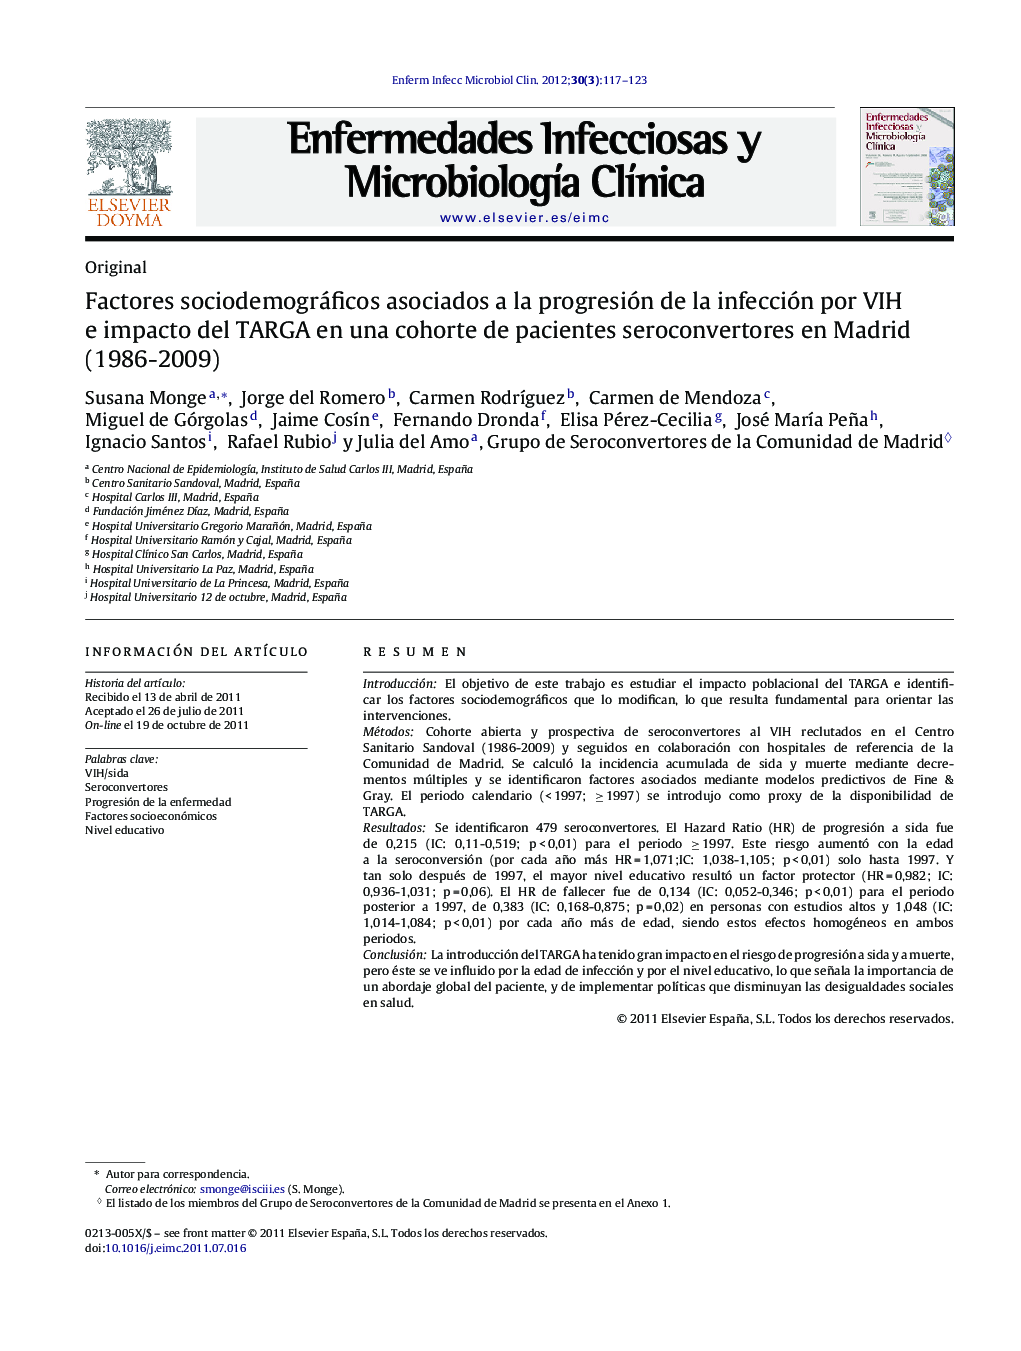 Factores sociodemográficos asociados a la progresión de la infección por VIH e impacto del TARGA en una cohorte de pacientes seroconvertores en Madrid (1986-2009)